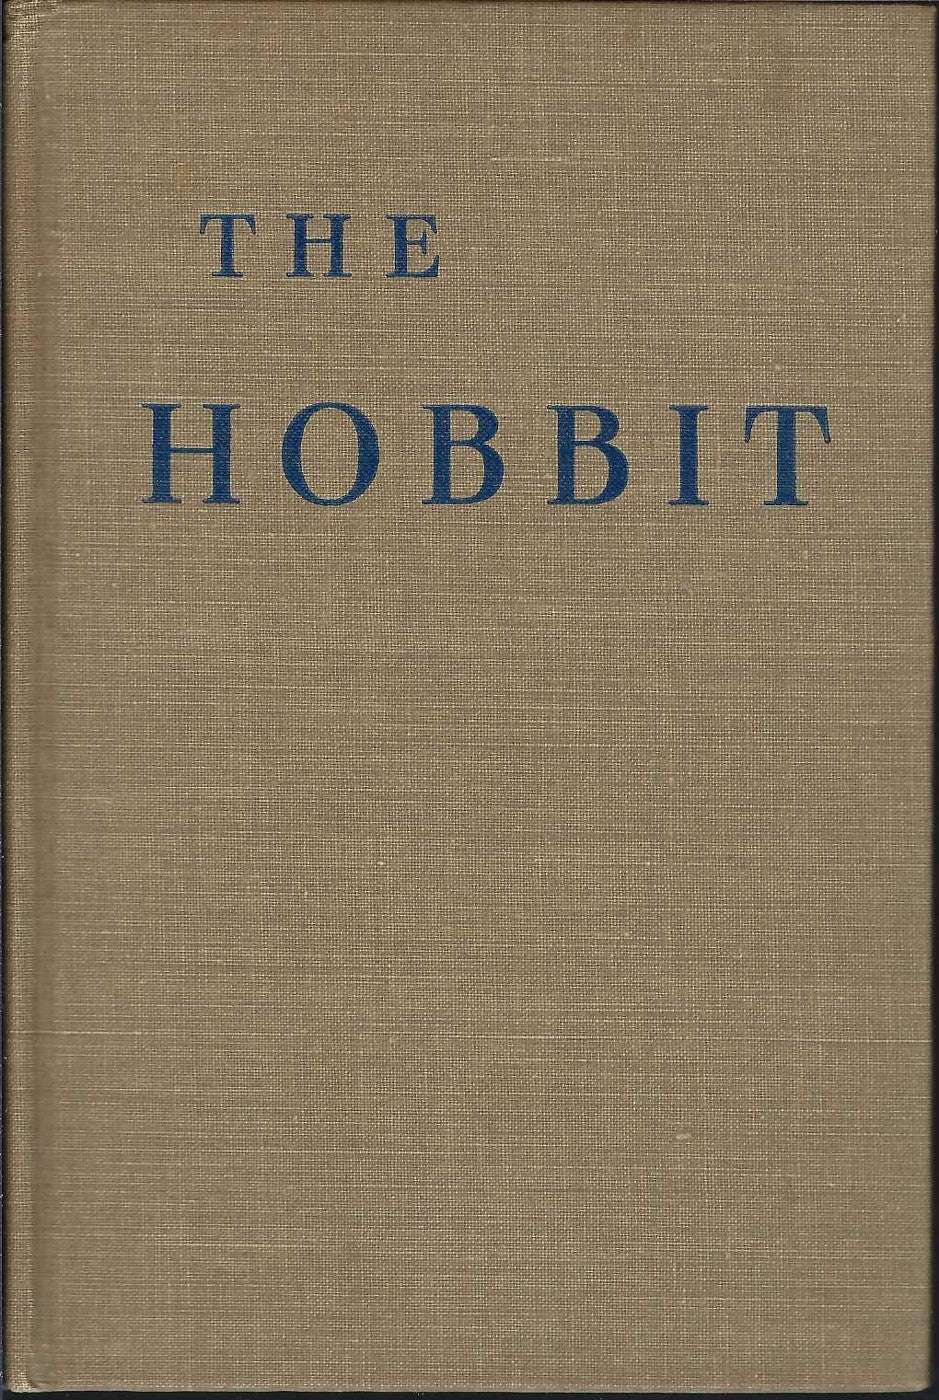 The Hobbit 